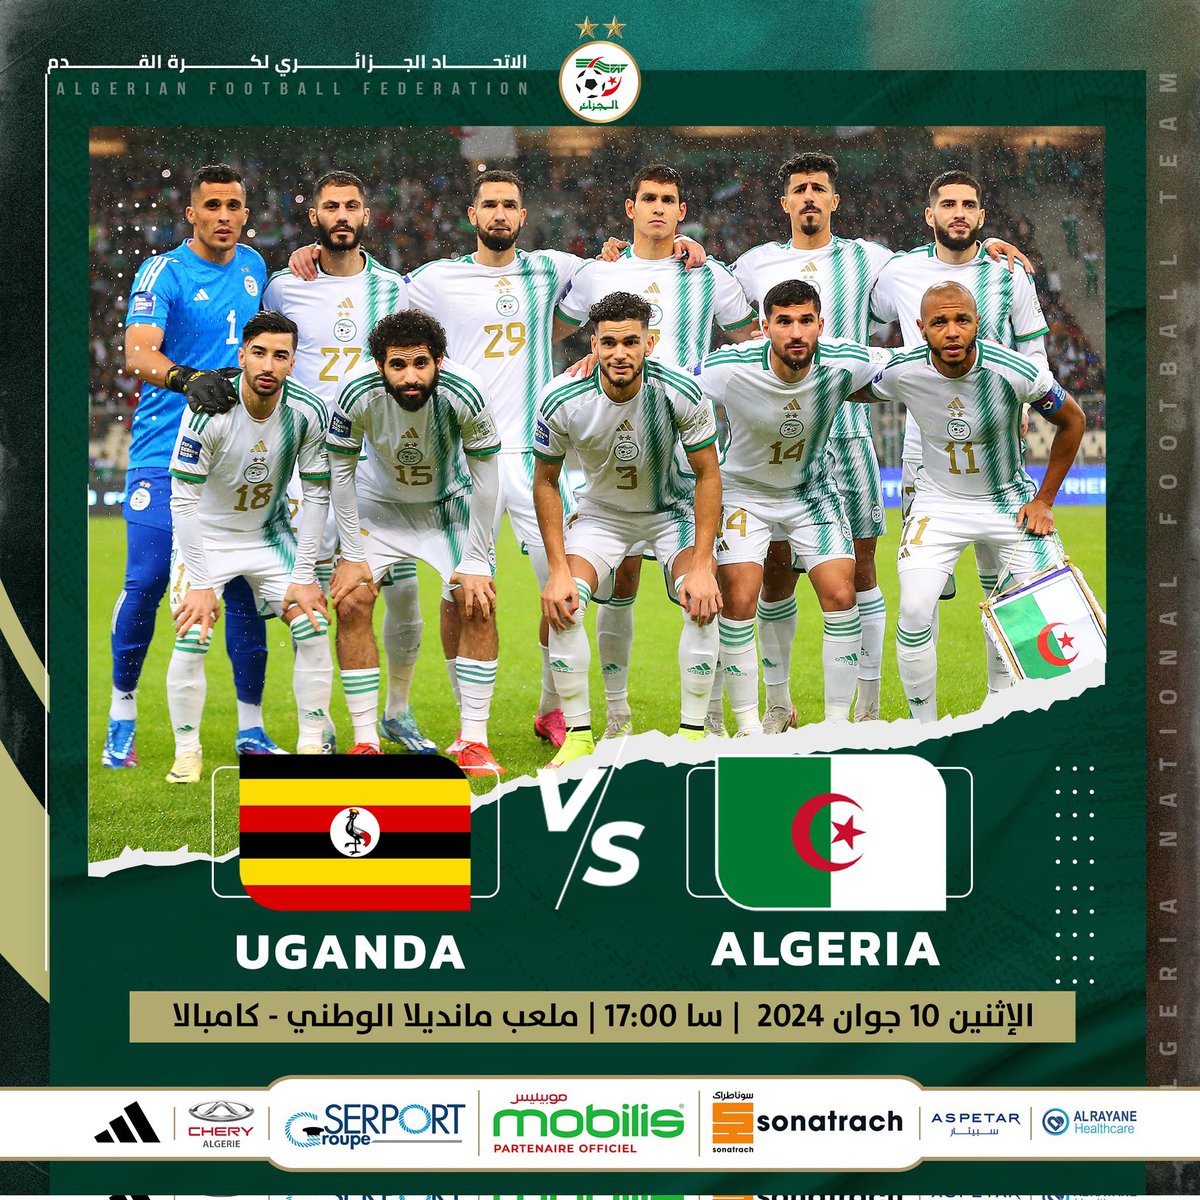 🚨OFFICIEL🚨

L’équipe nationale affrontera l’Ouganda le 10 juin à 17h au Stade Nelson Mandela à Kampala pour les éliminatoires de la Coupe du Monde 2026.🇩🇿⚔️🇺🇬